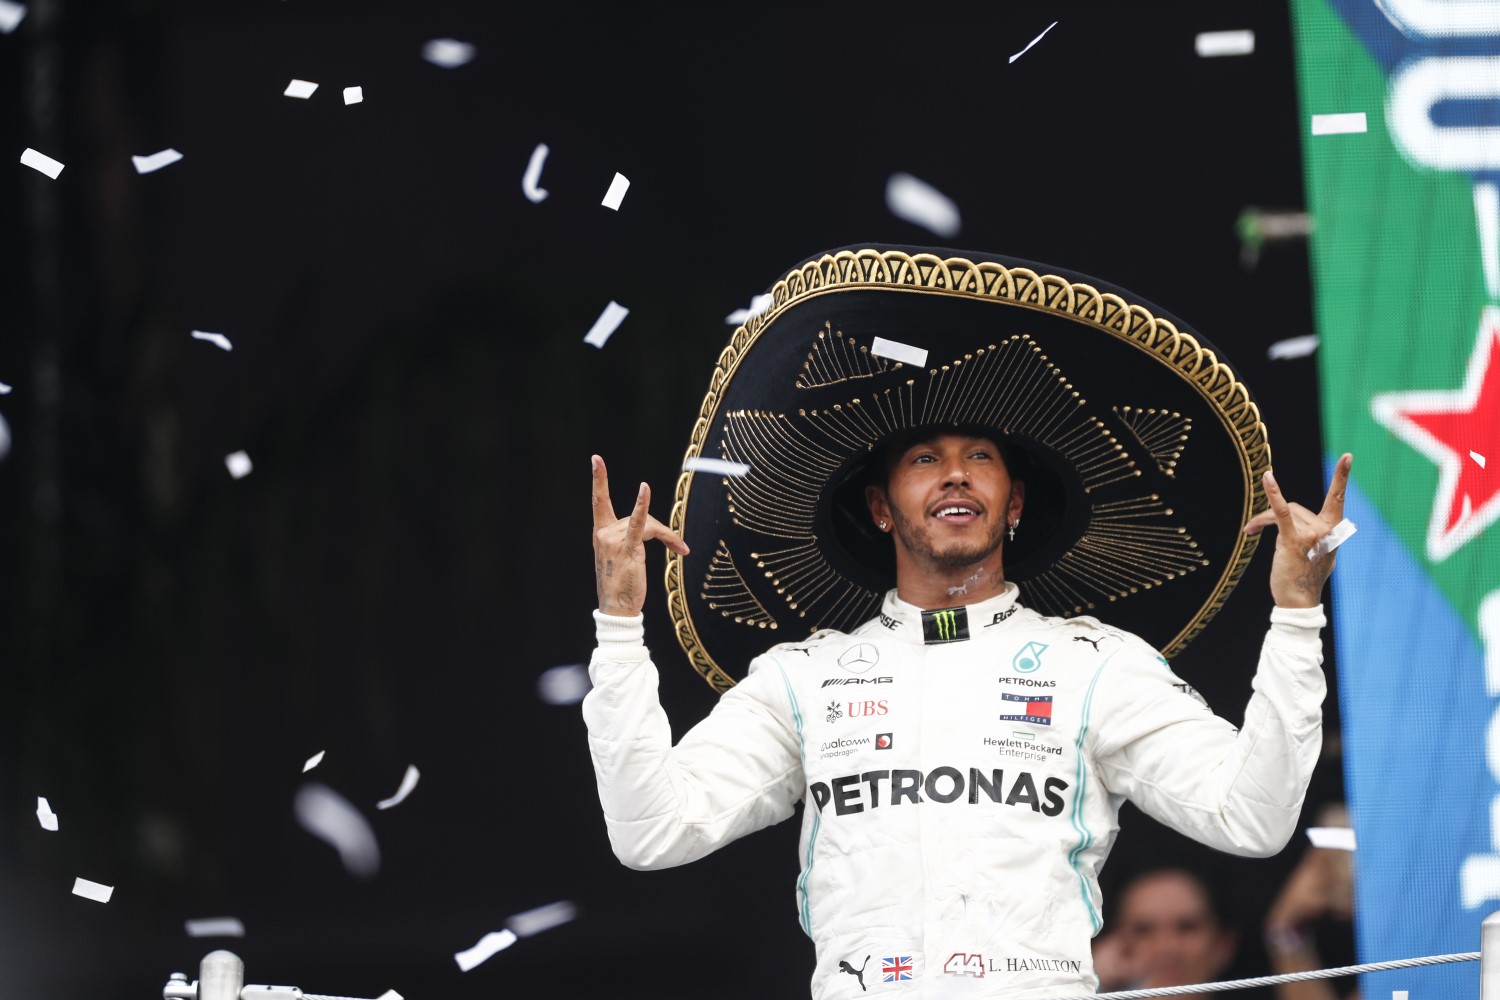 Hamilton dons a Mexican Sombrero